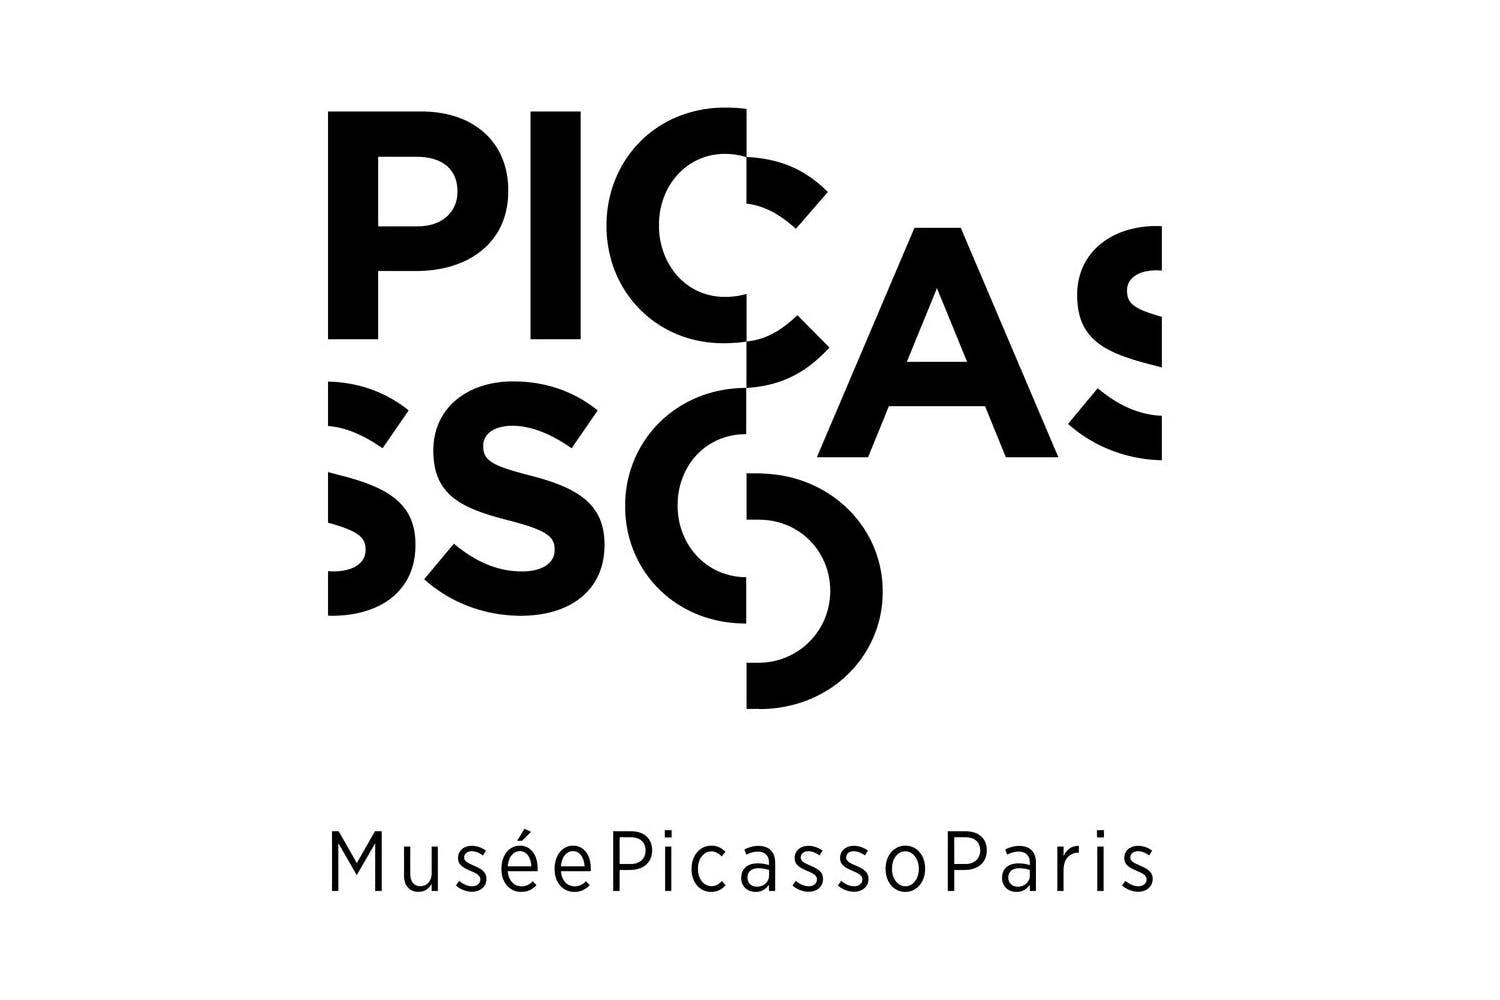 Picasso Museum skip-the-line tickets en tijdelijke tentoonstelling